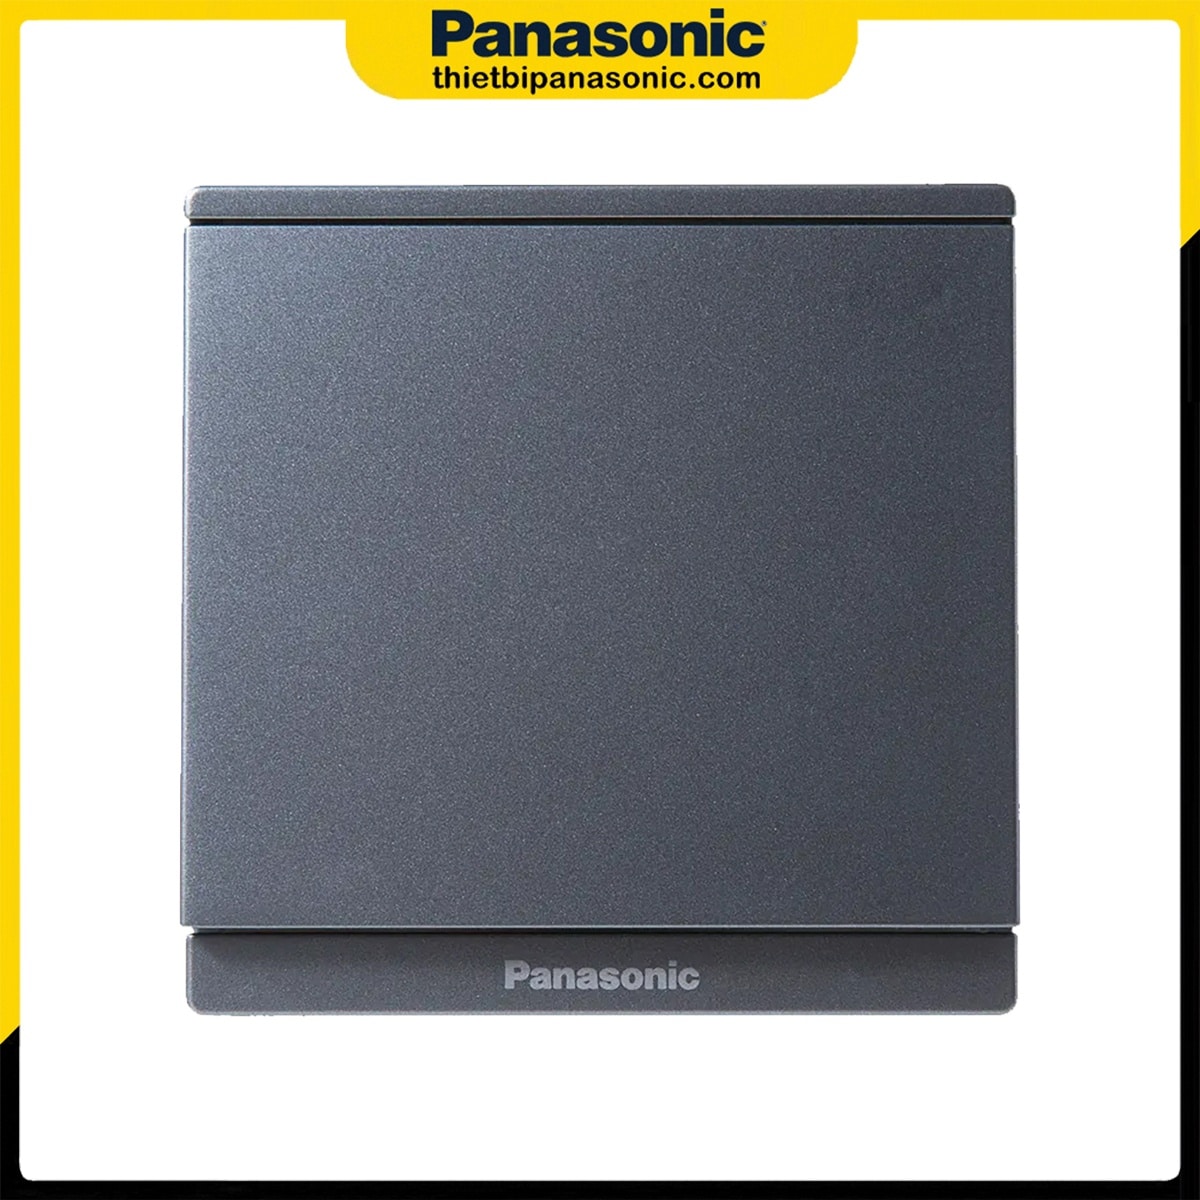 Bộ 1 công tắc 1 chiều Panasonic Moderva màu xám không chỉ báo WMF501MYH-VN